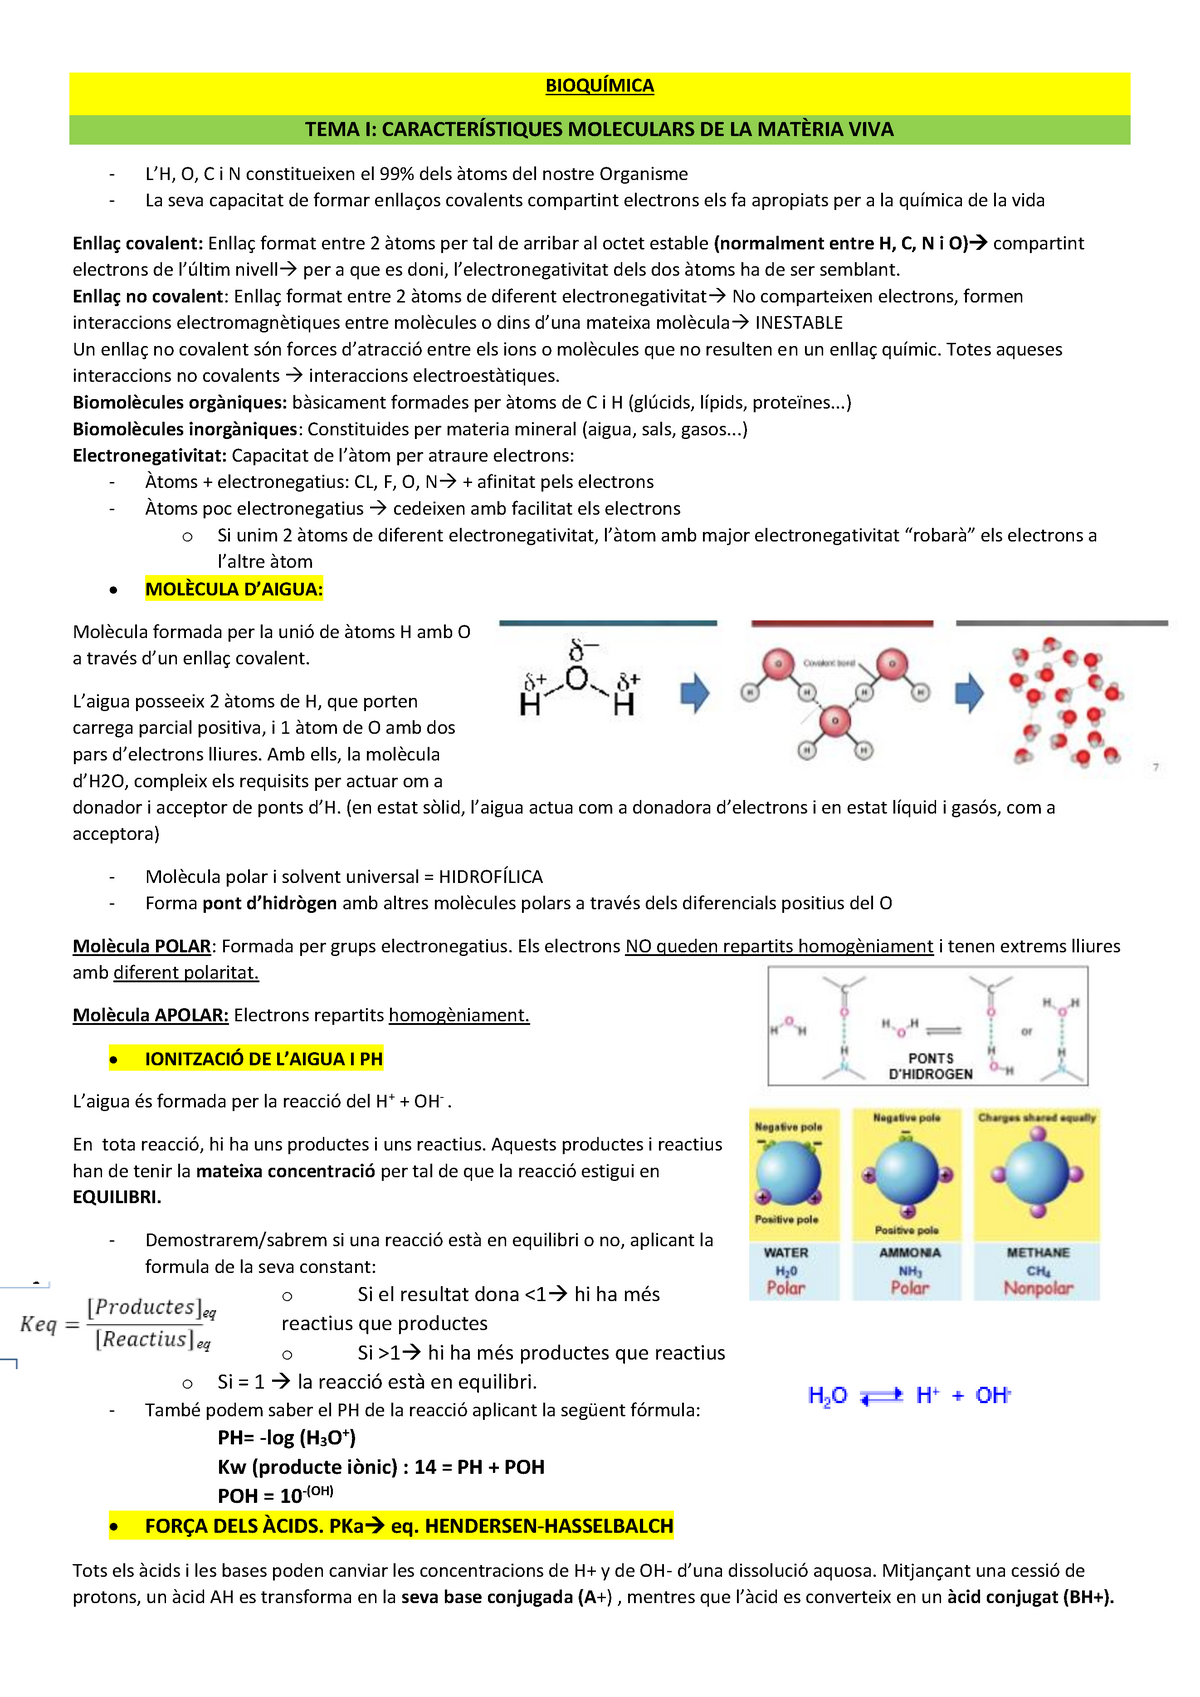 Bioquimica Resumen Bioquímica Tema I Moleculars De La Viva O C I